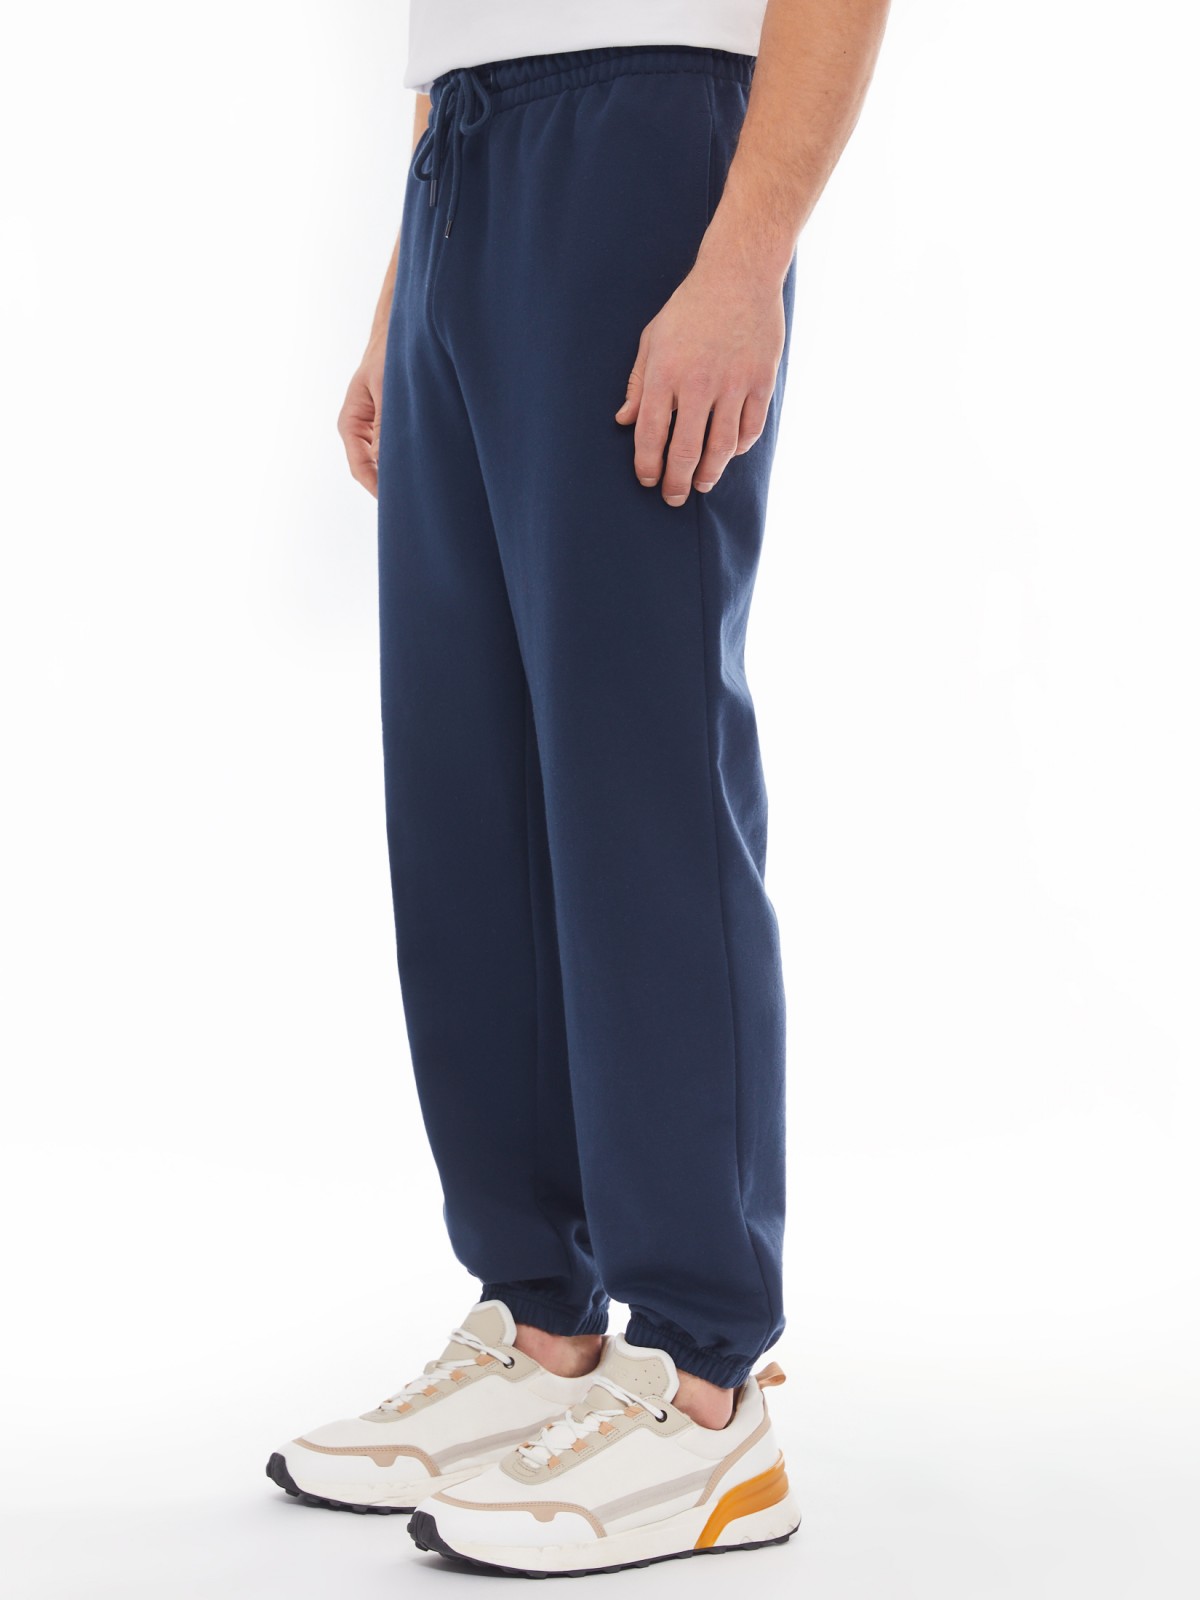 Трикотажные брюки-джоггеры в спортивном стиле zolla 014137660042, цвет синий, размер S - фото 5